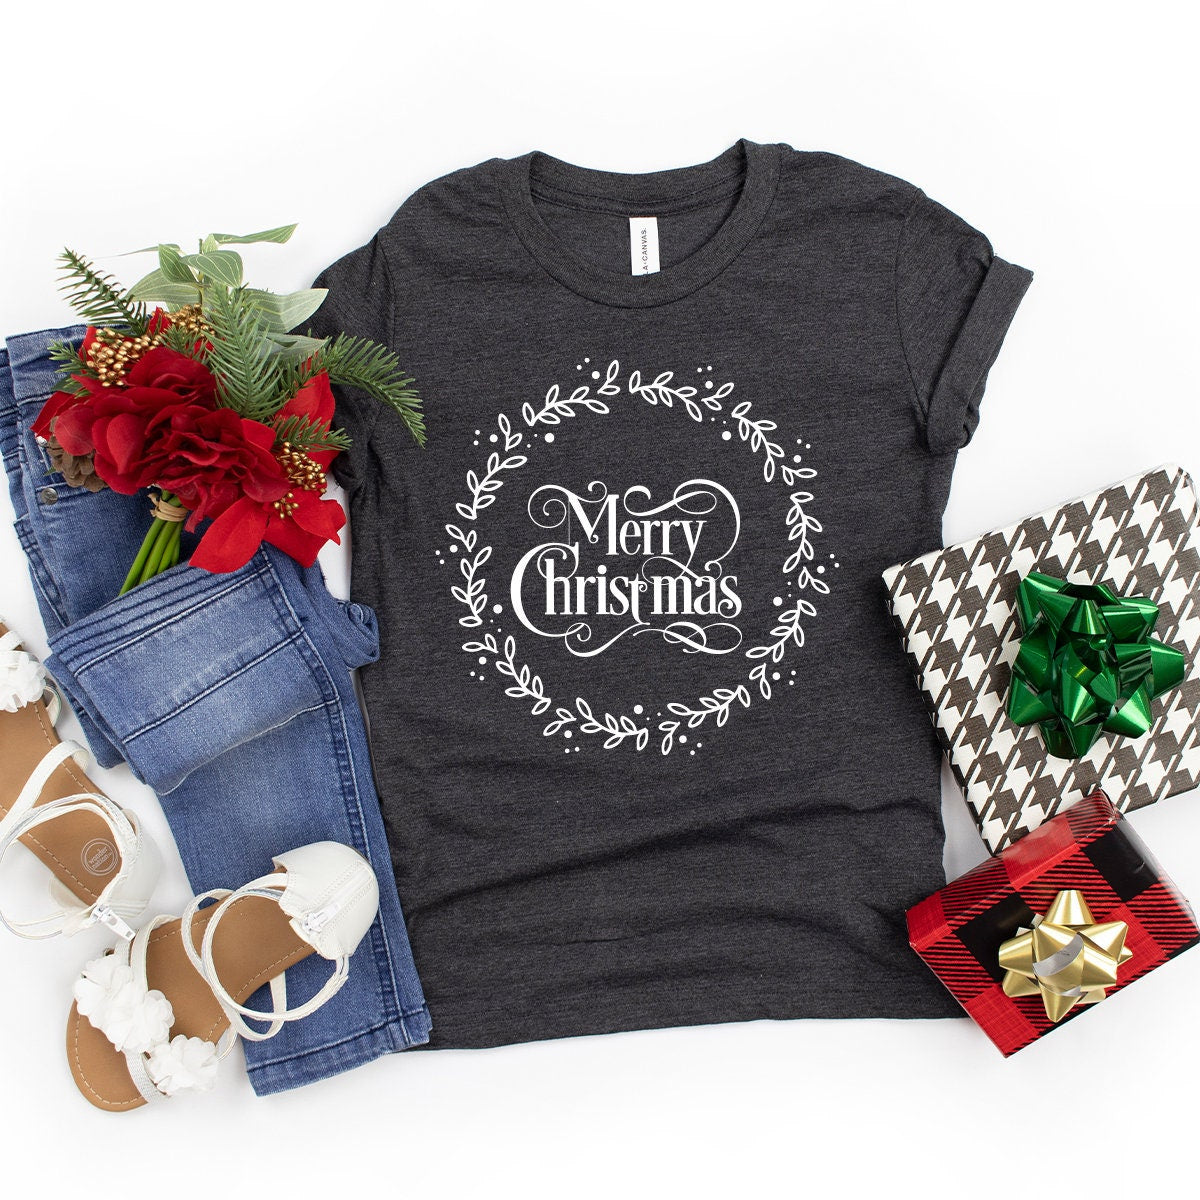 Merry Christmas Shirts, Christmas T Shirt, Christmas Pajamas, Xmas Party Shirt, Gift For Christmas, Funny Christmas Tee, Holiday T Shirt - Fastdeliverytees.com